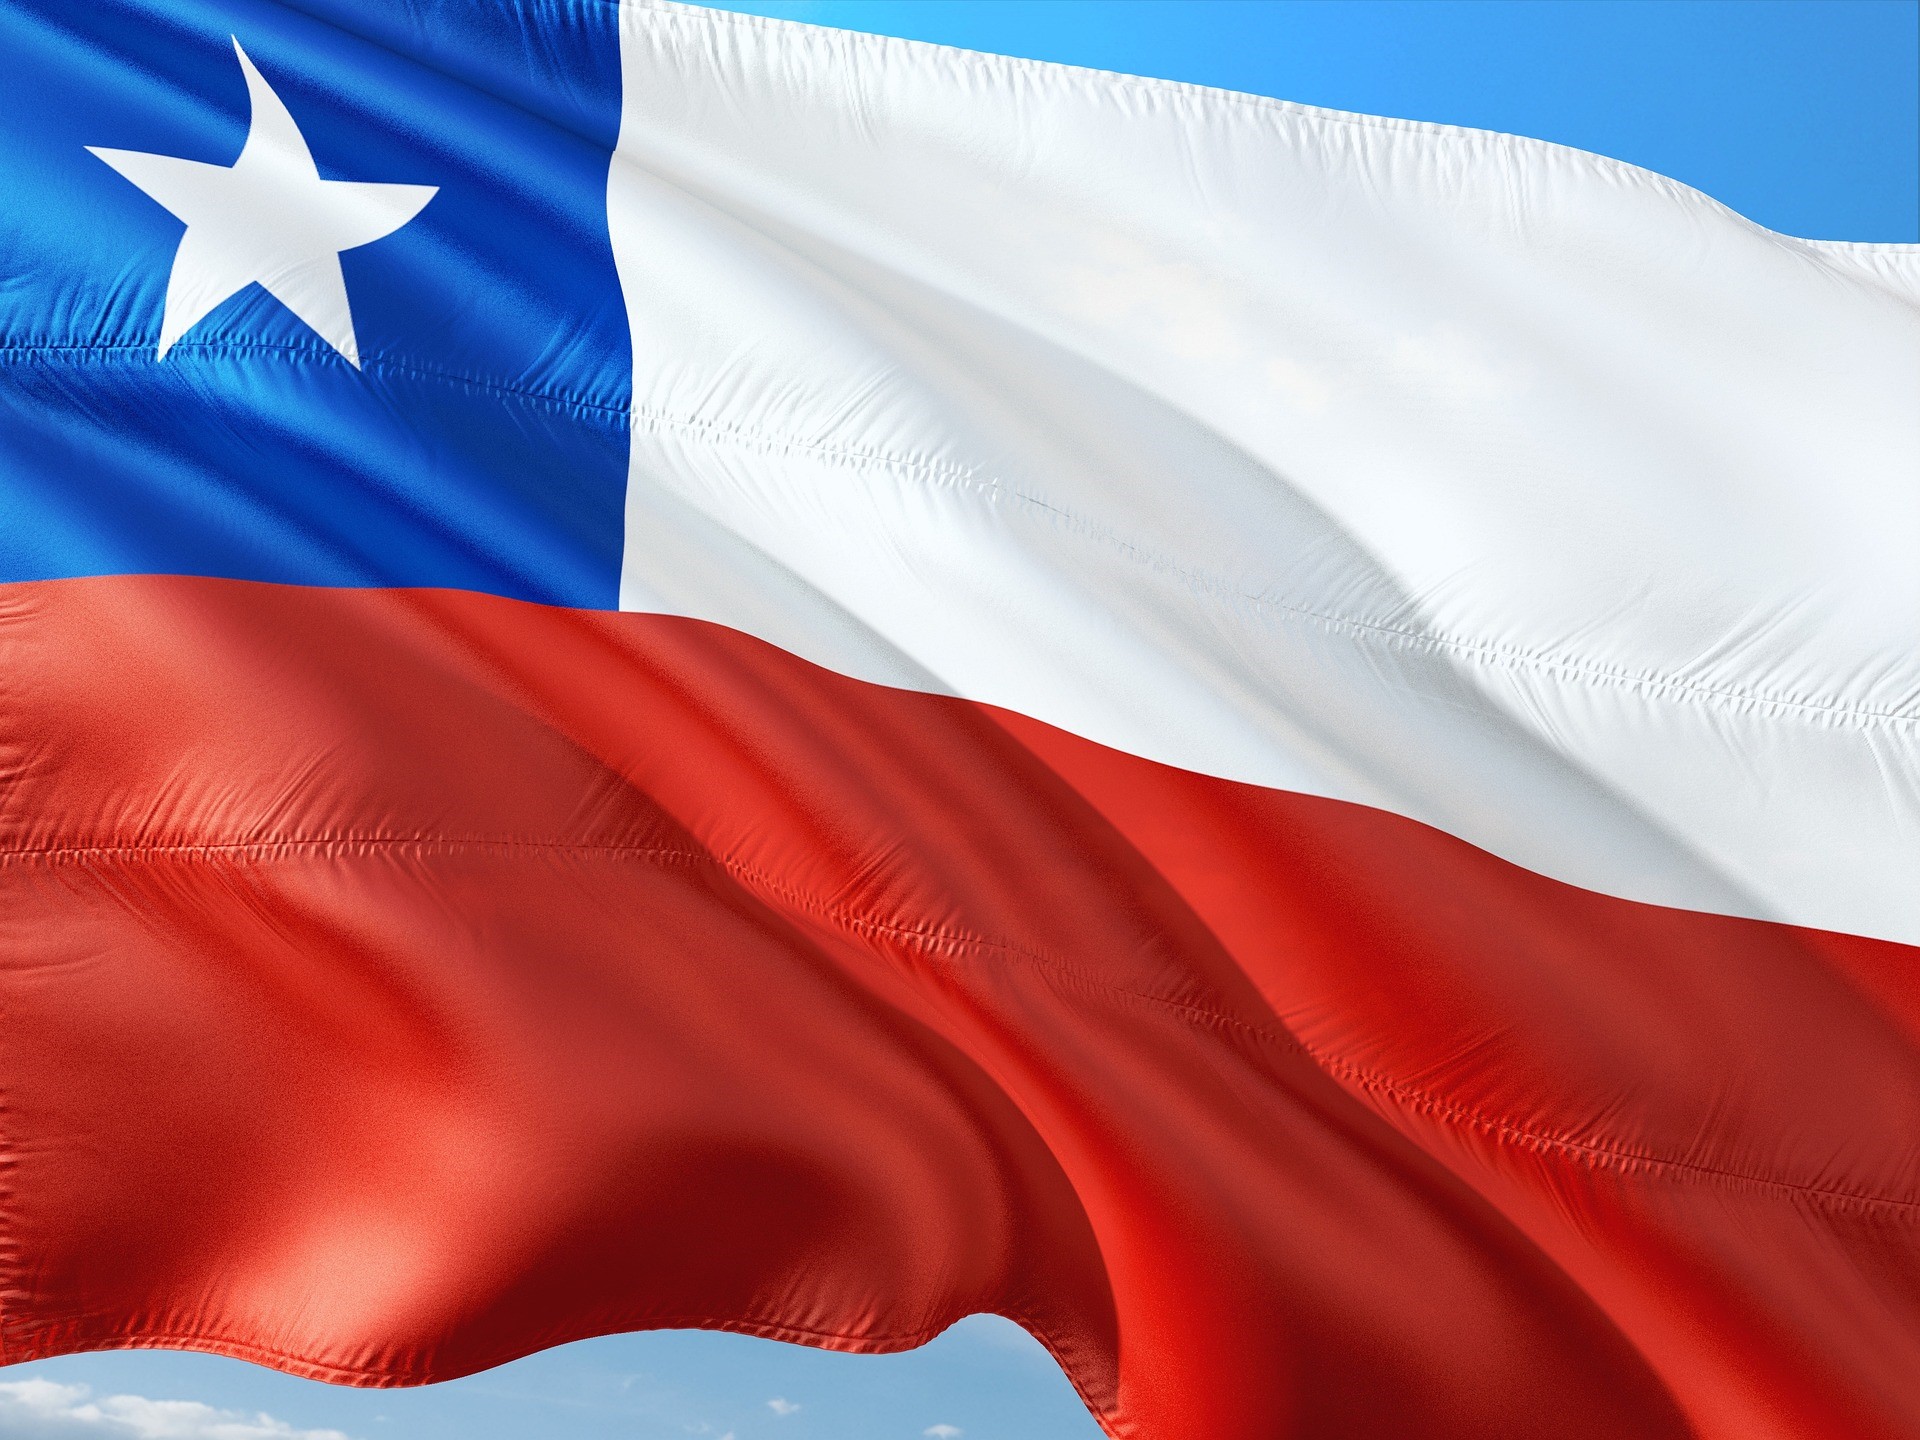 Världens näst största producent av litium, Chile, chockerar marknaden när president Boric avslöjade en strategi för att förstatliga landets litiumindustri.